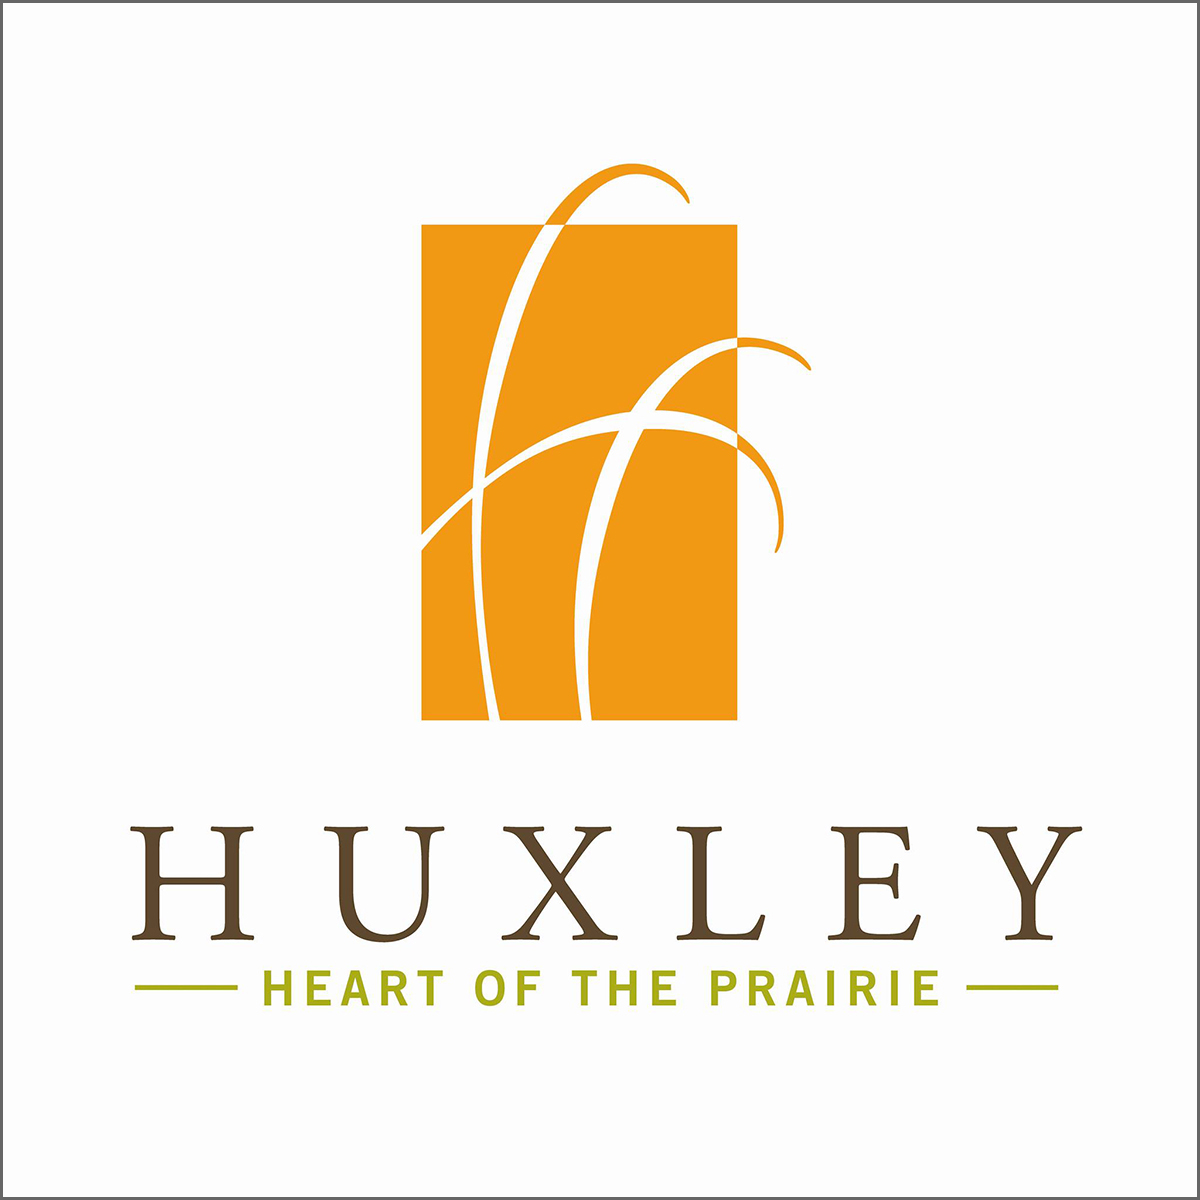 City of Huxley Iowa